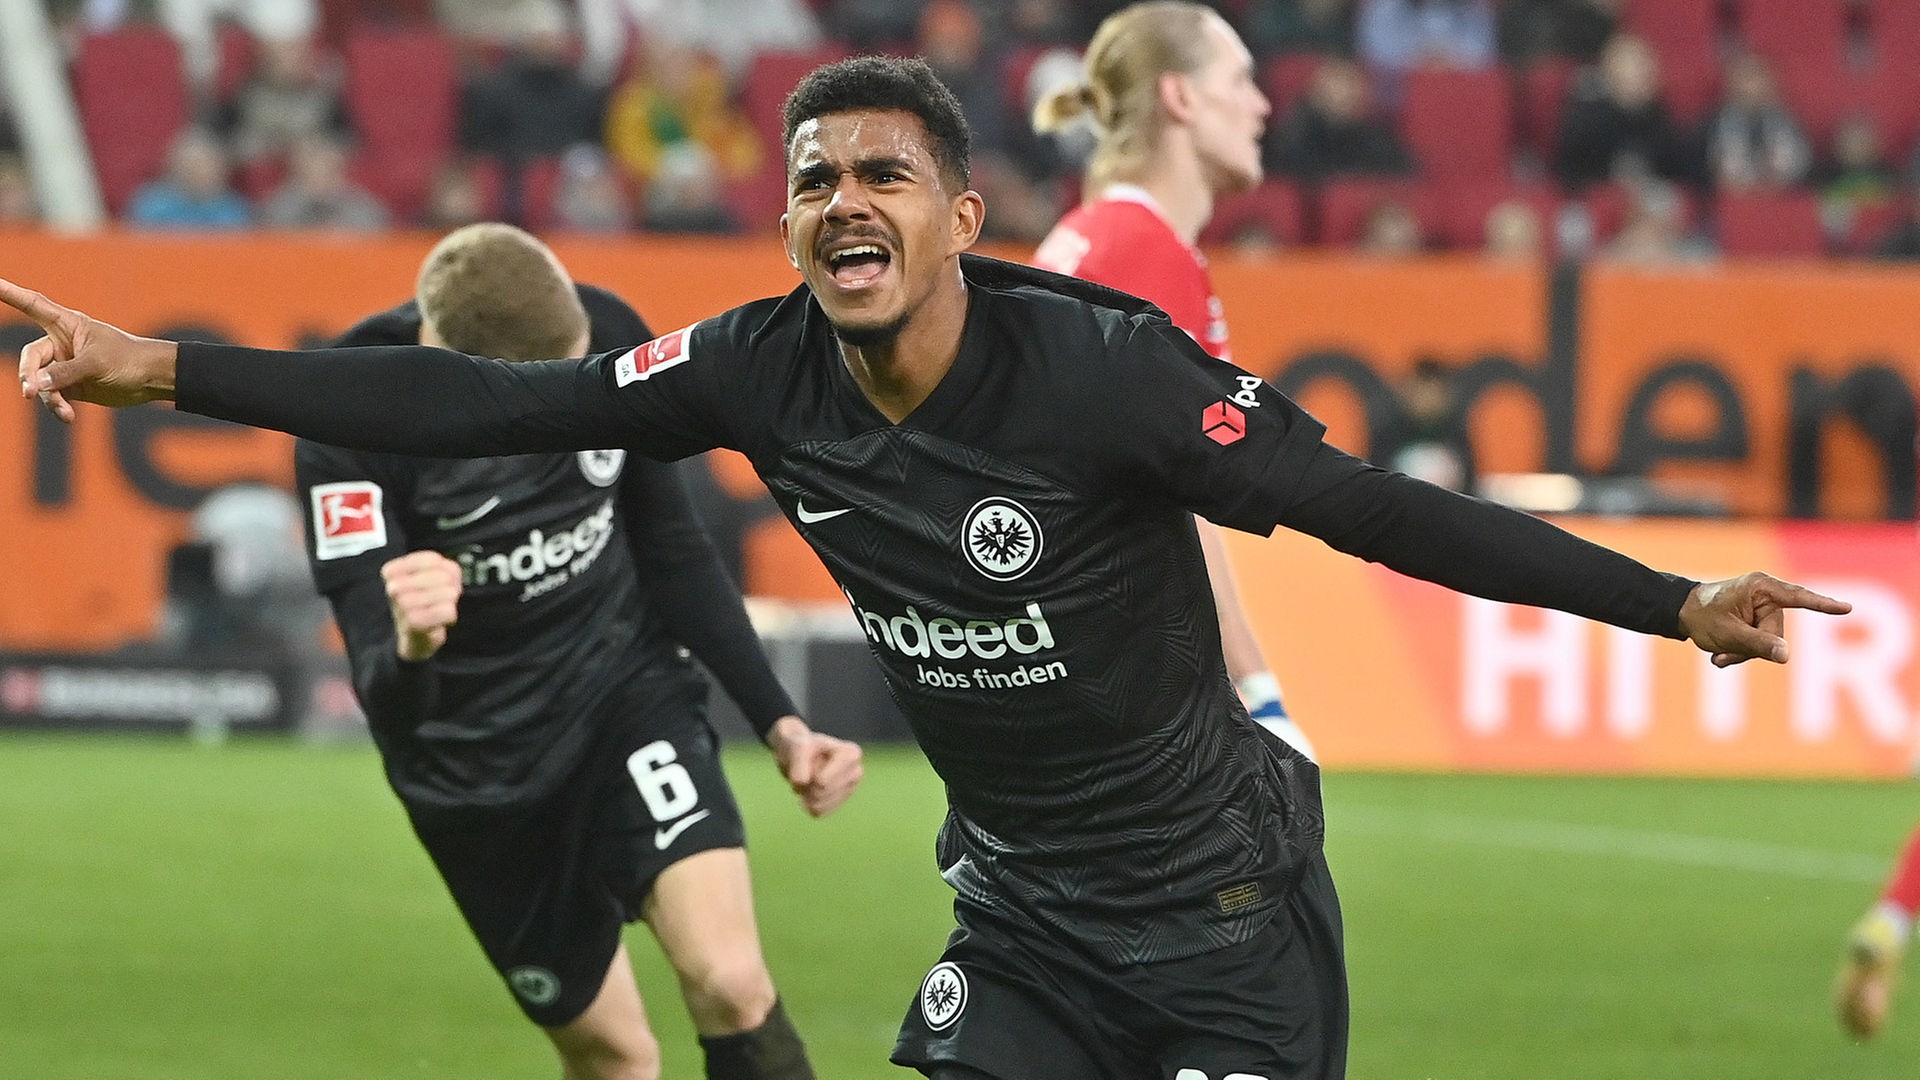 Fußball, Bundesliga Knauff wechselt fest vom BVB zu Eintracht Frankfurt - Fußball - Sport